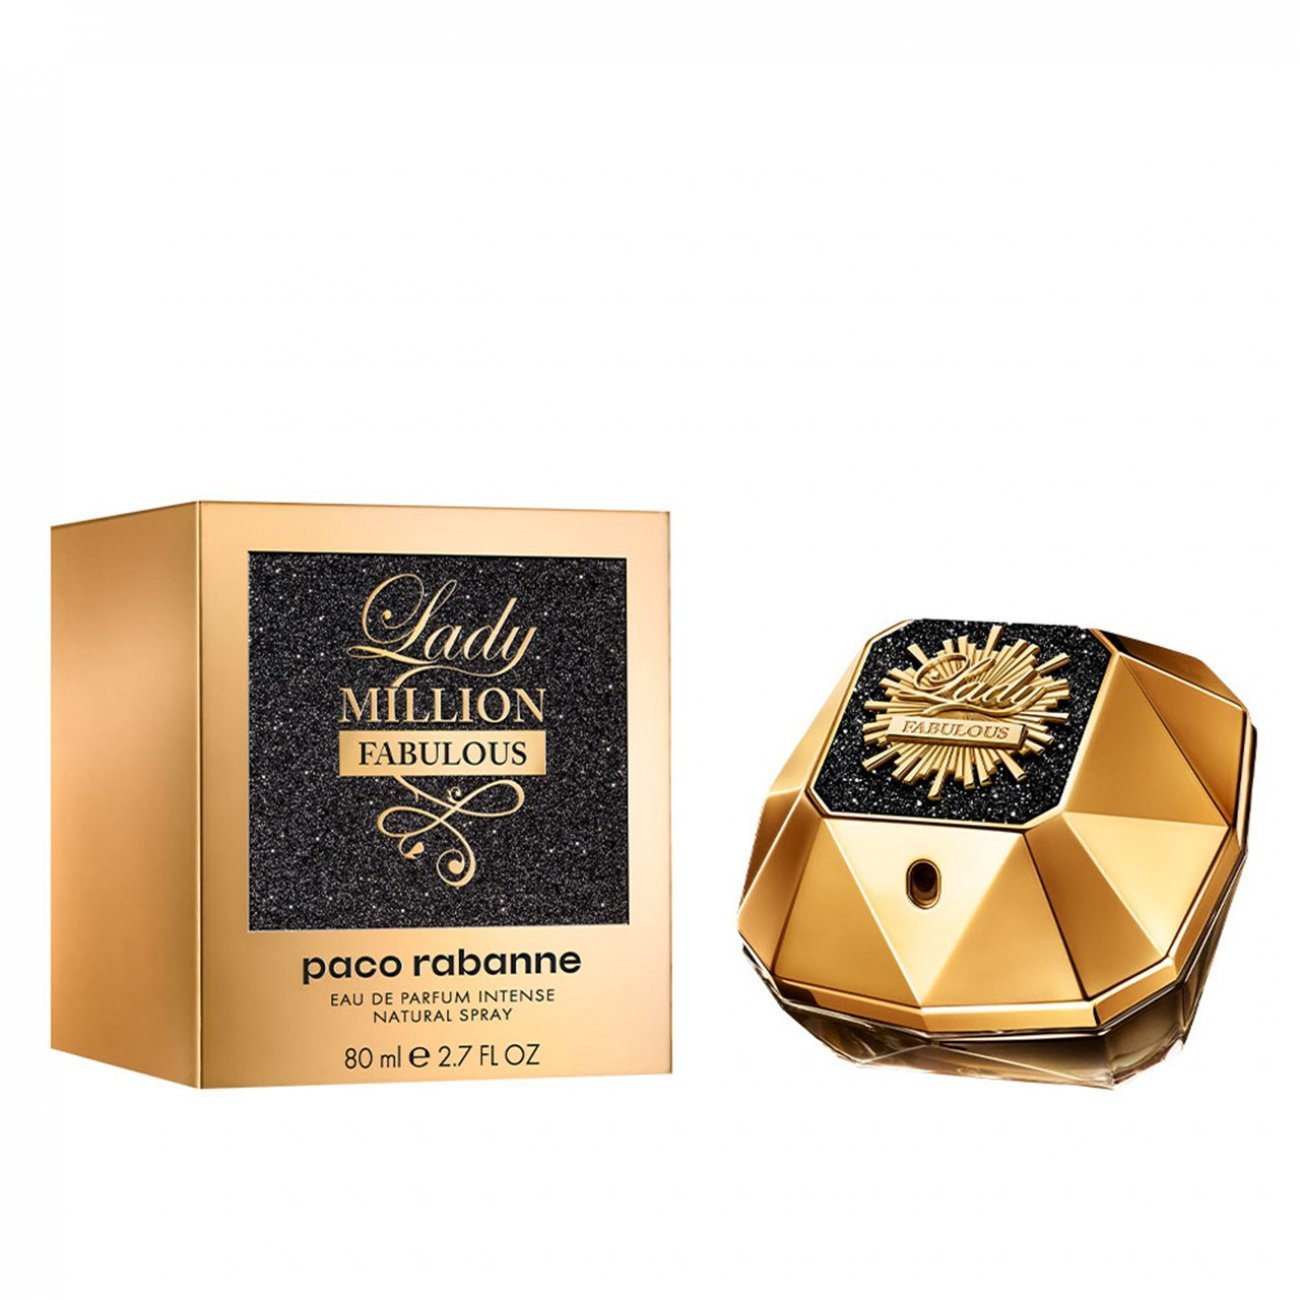 springe Sovereign hugge Buy Paco Rabanne Lady Million Fabulous Eau de Parfum Intense · USA